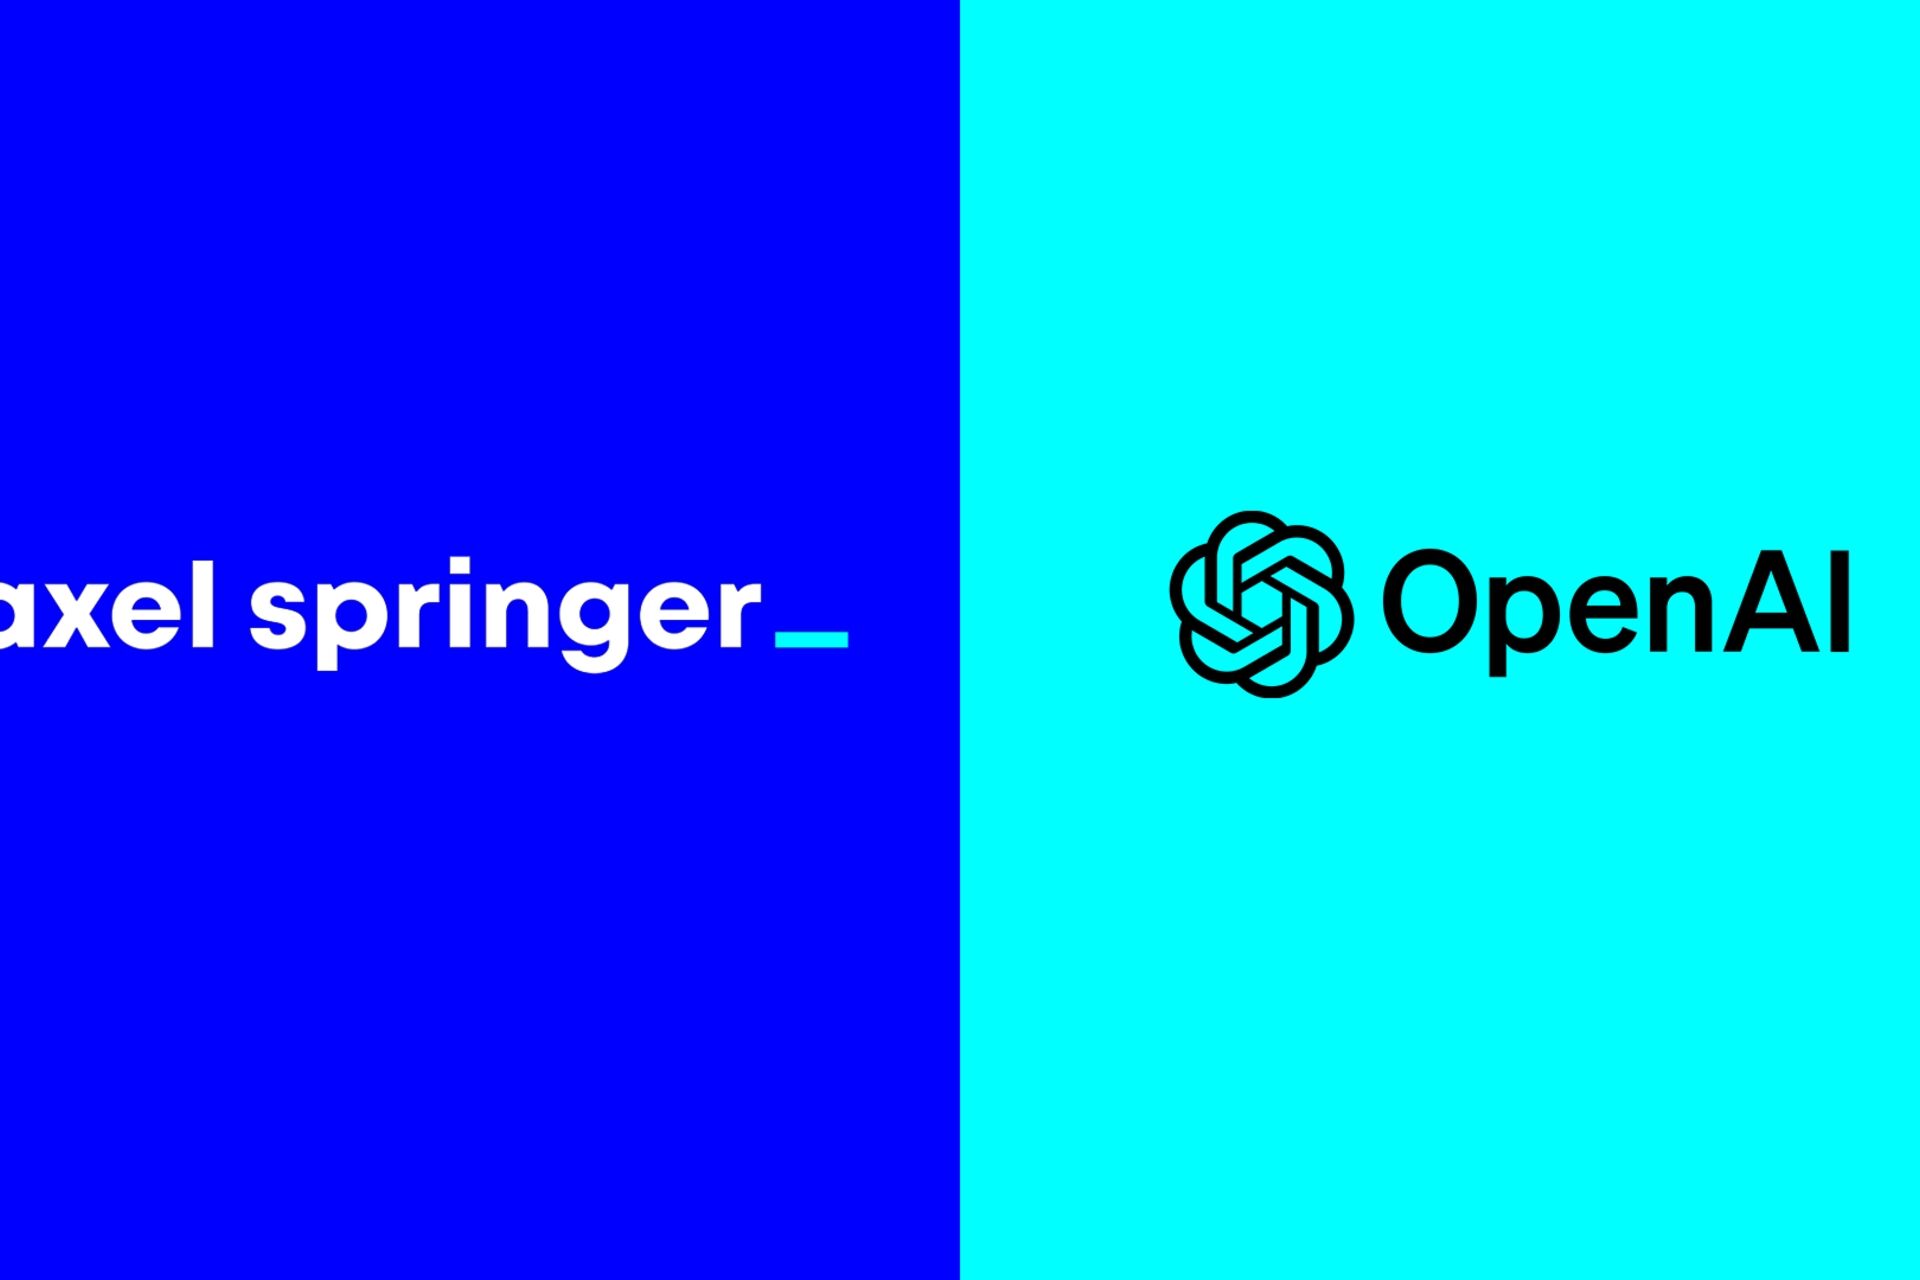 Novinarstvo: Axel Springer i OpenAI najavili su globalno partnerstvo za jačanje neovisnog novinarstva u doba umjetne inteligencije